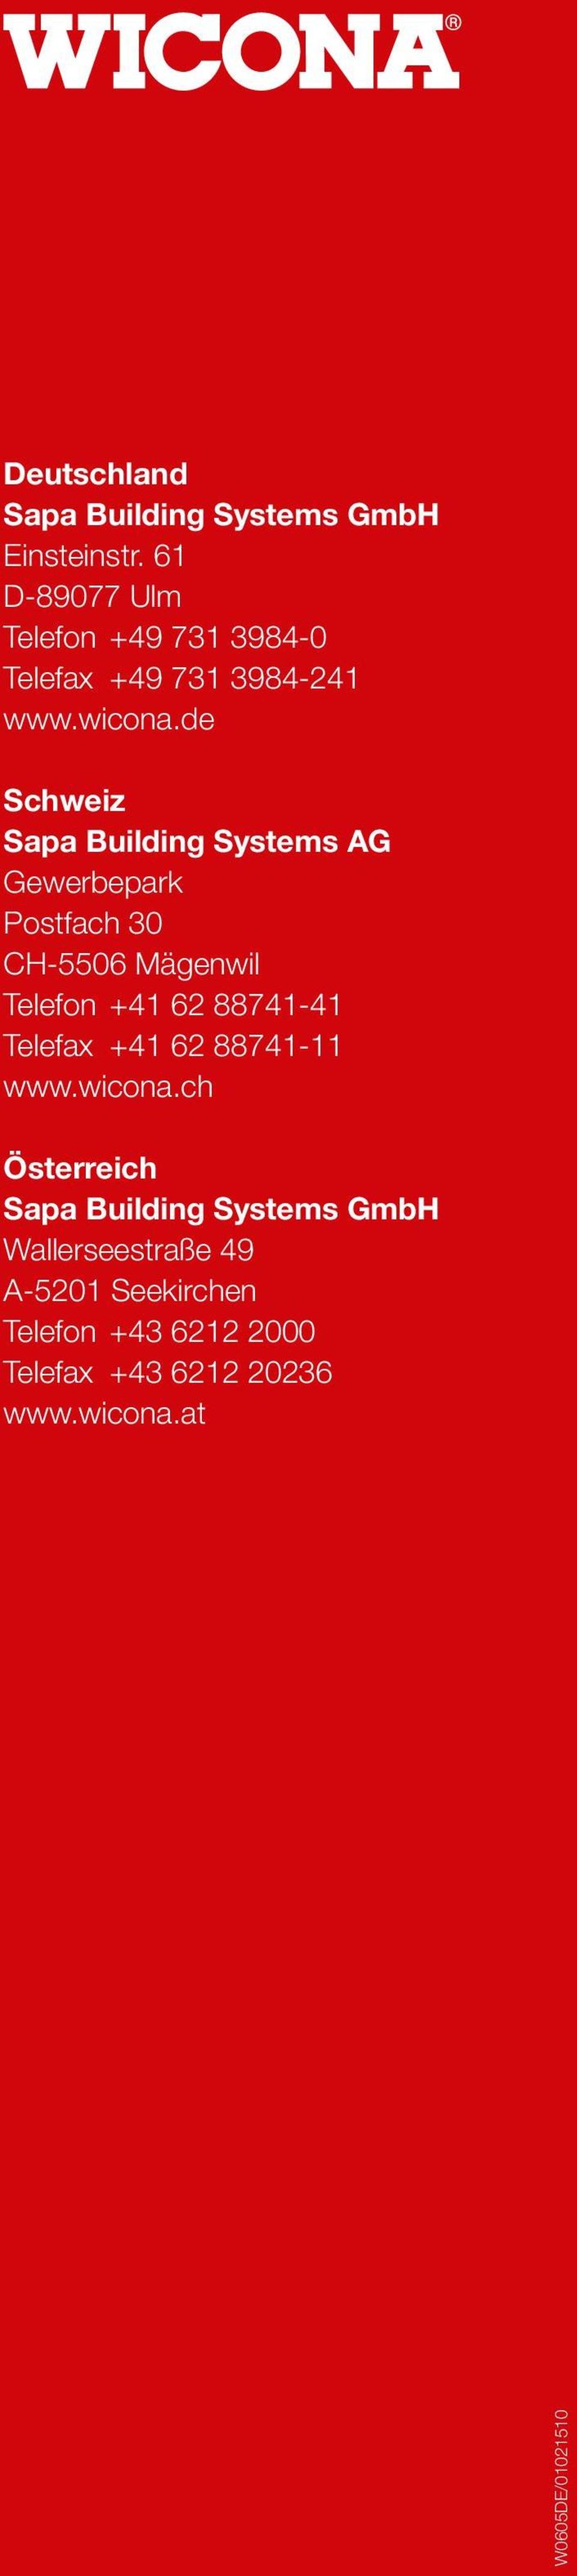 de Schweiz Sapa Building Systems AG Gewerbepark Postfach 30 CH-5506 Mägenwil Telefon +41 62 88741-41